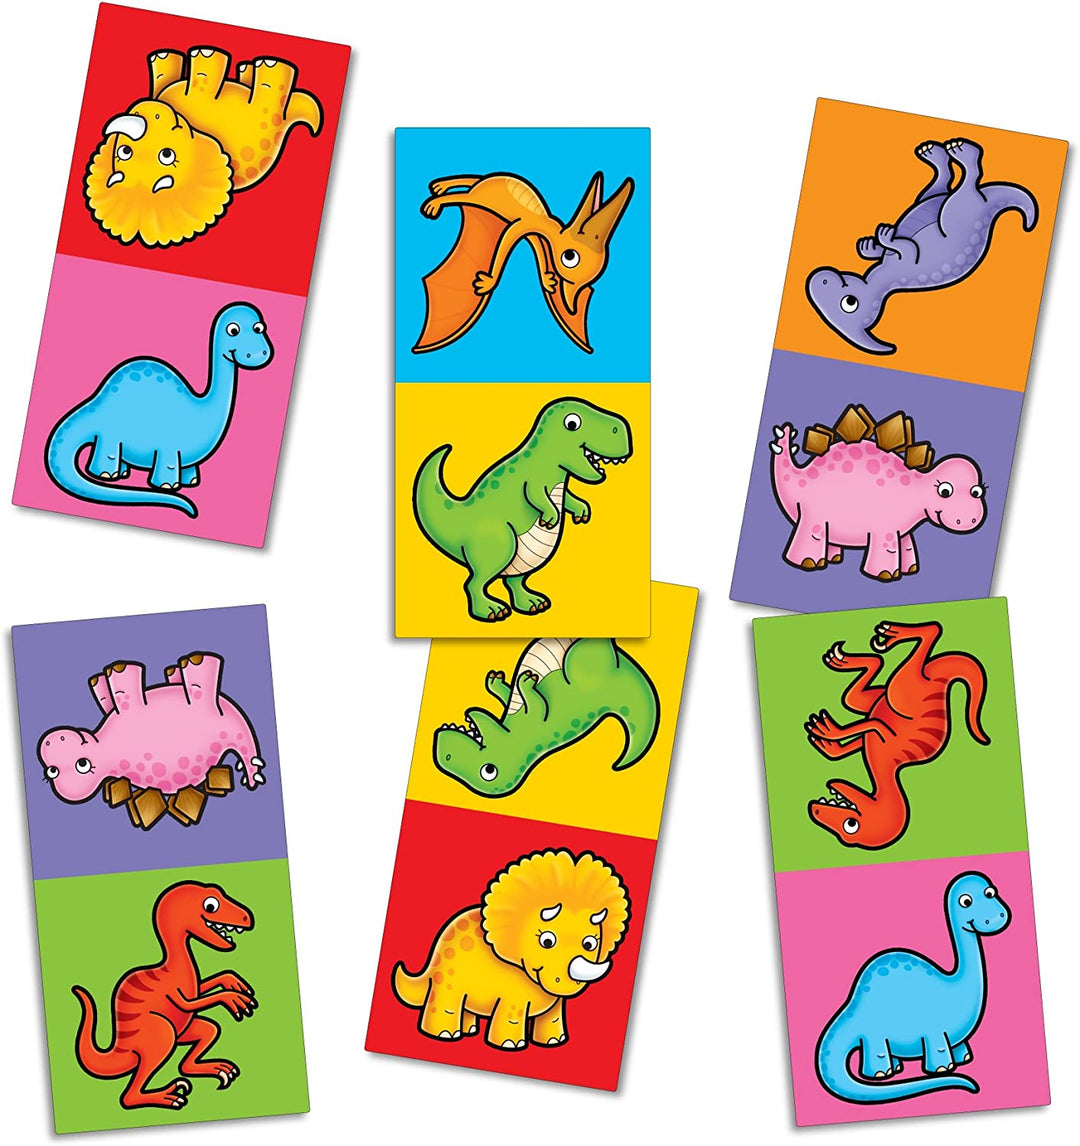 Mini Games - Dinosaur Dominoes